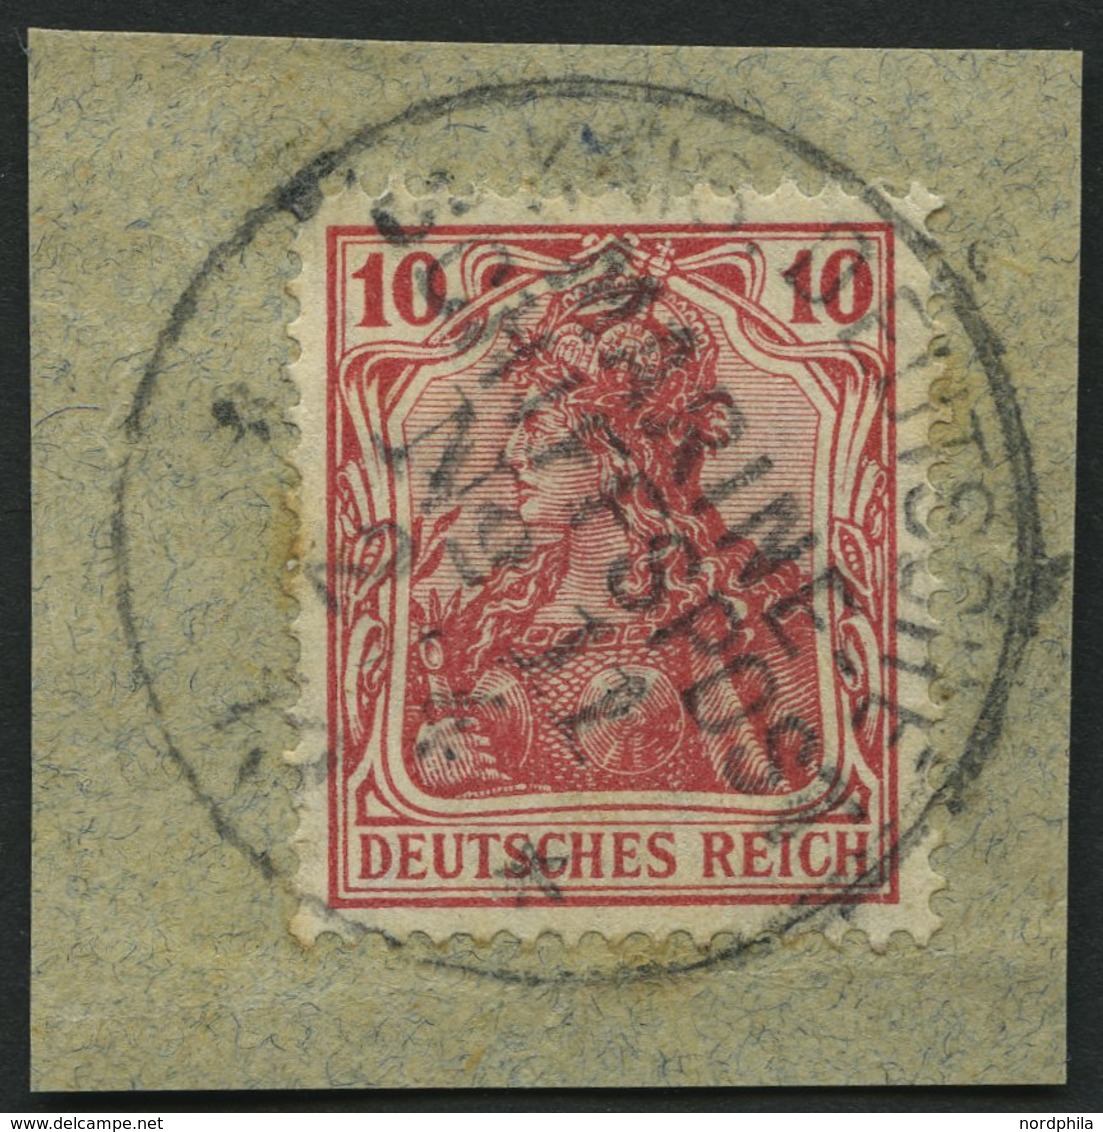 MSP BIS 1914 DR 86 BrfStk, 11 (SMS SEEADLER), 2.4.13, Auf 10 Pf. Germania, Prachtbriefstück - Schiffahrt